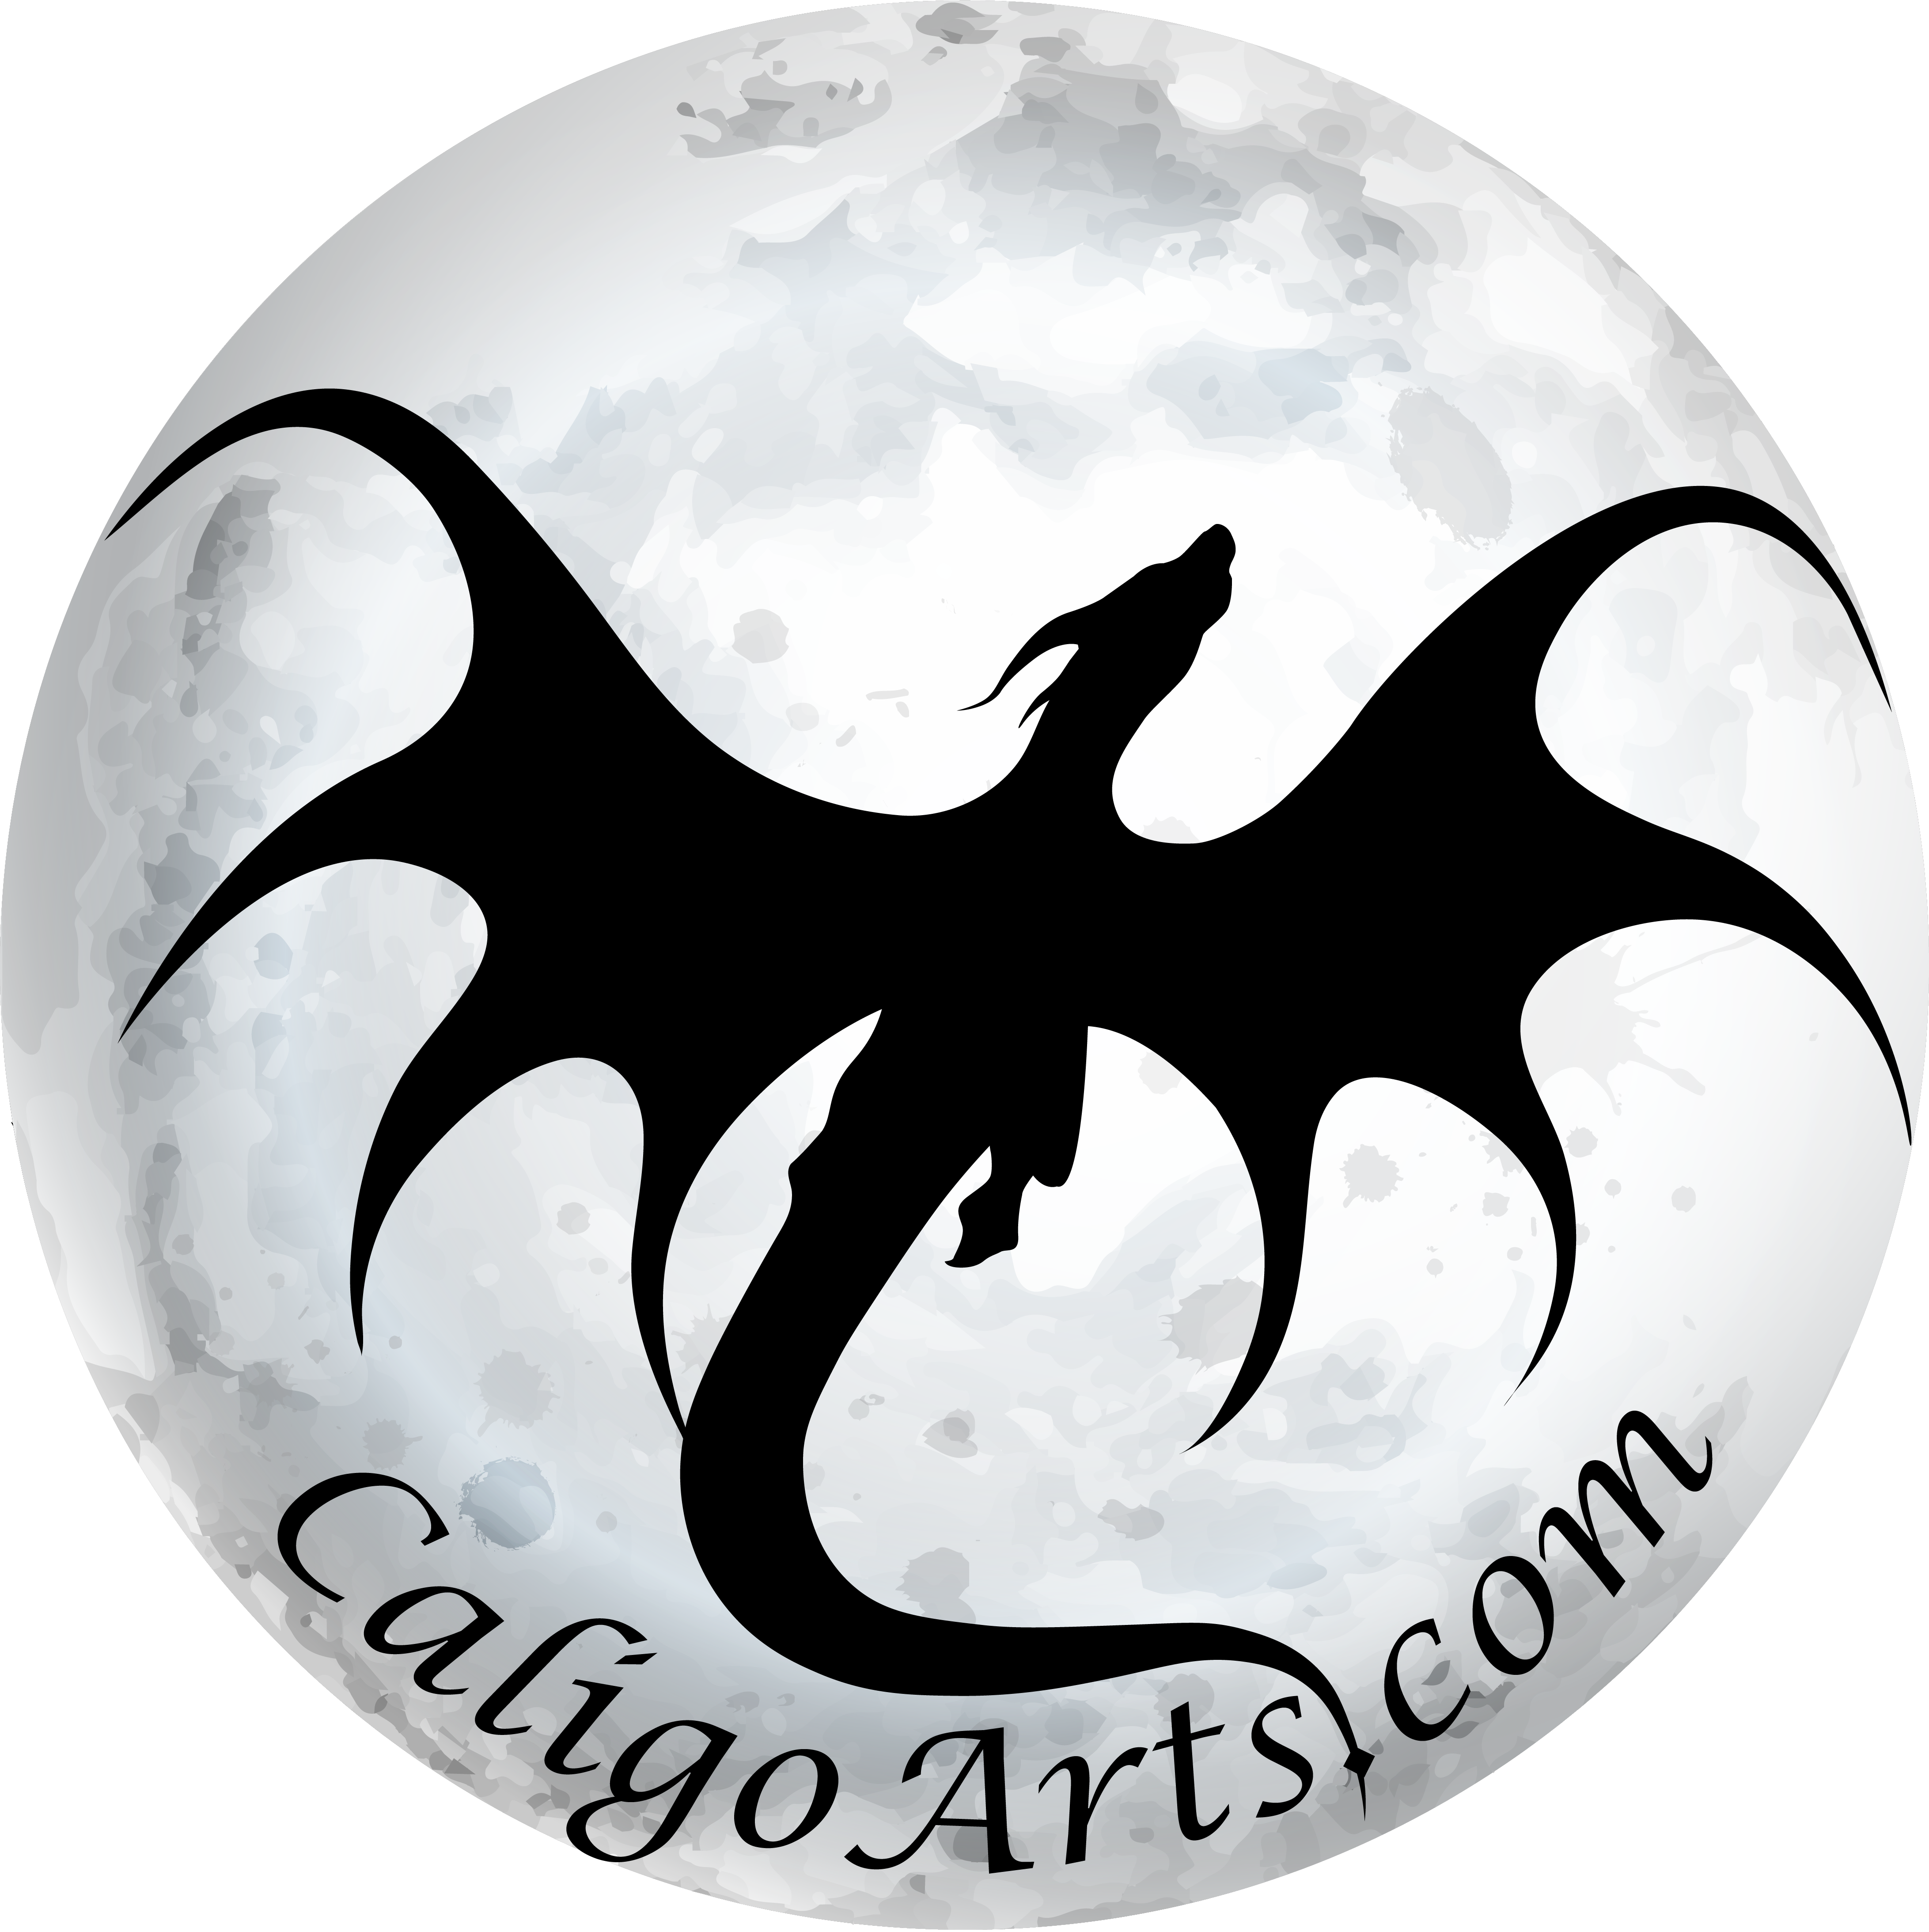 (Caligo Arts Logo)